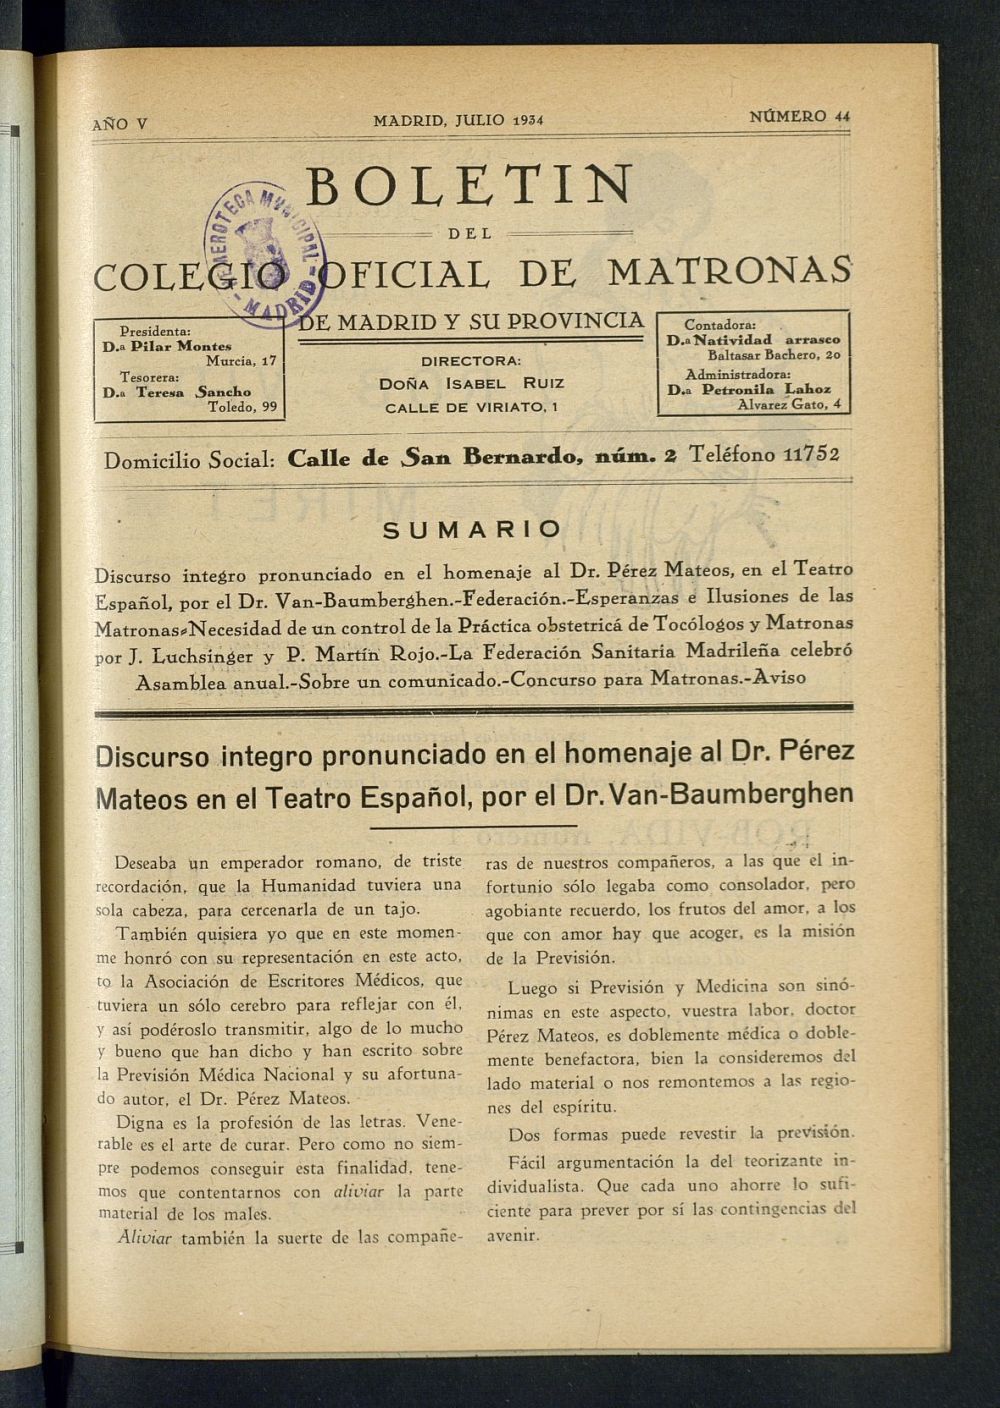 Boletn del Colegio Oficial de Matronas de Madrid y su Provincia de julio de 1934